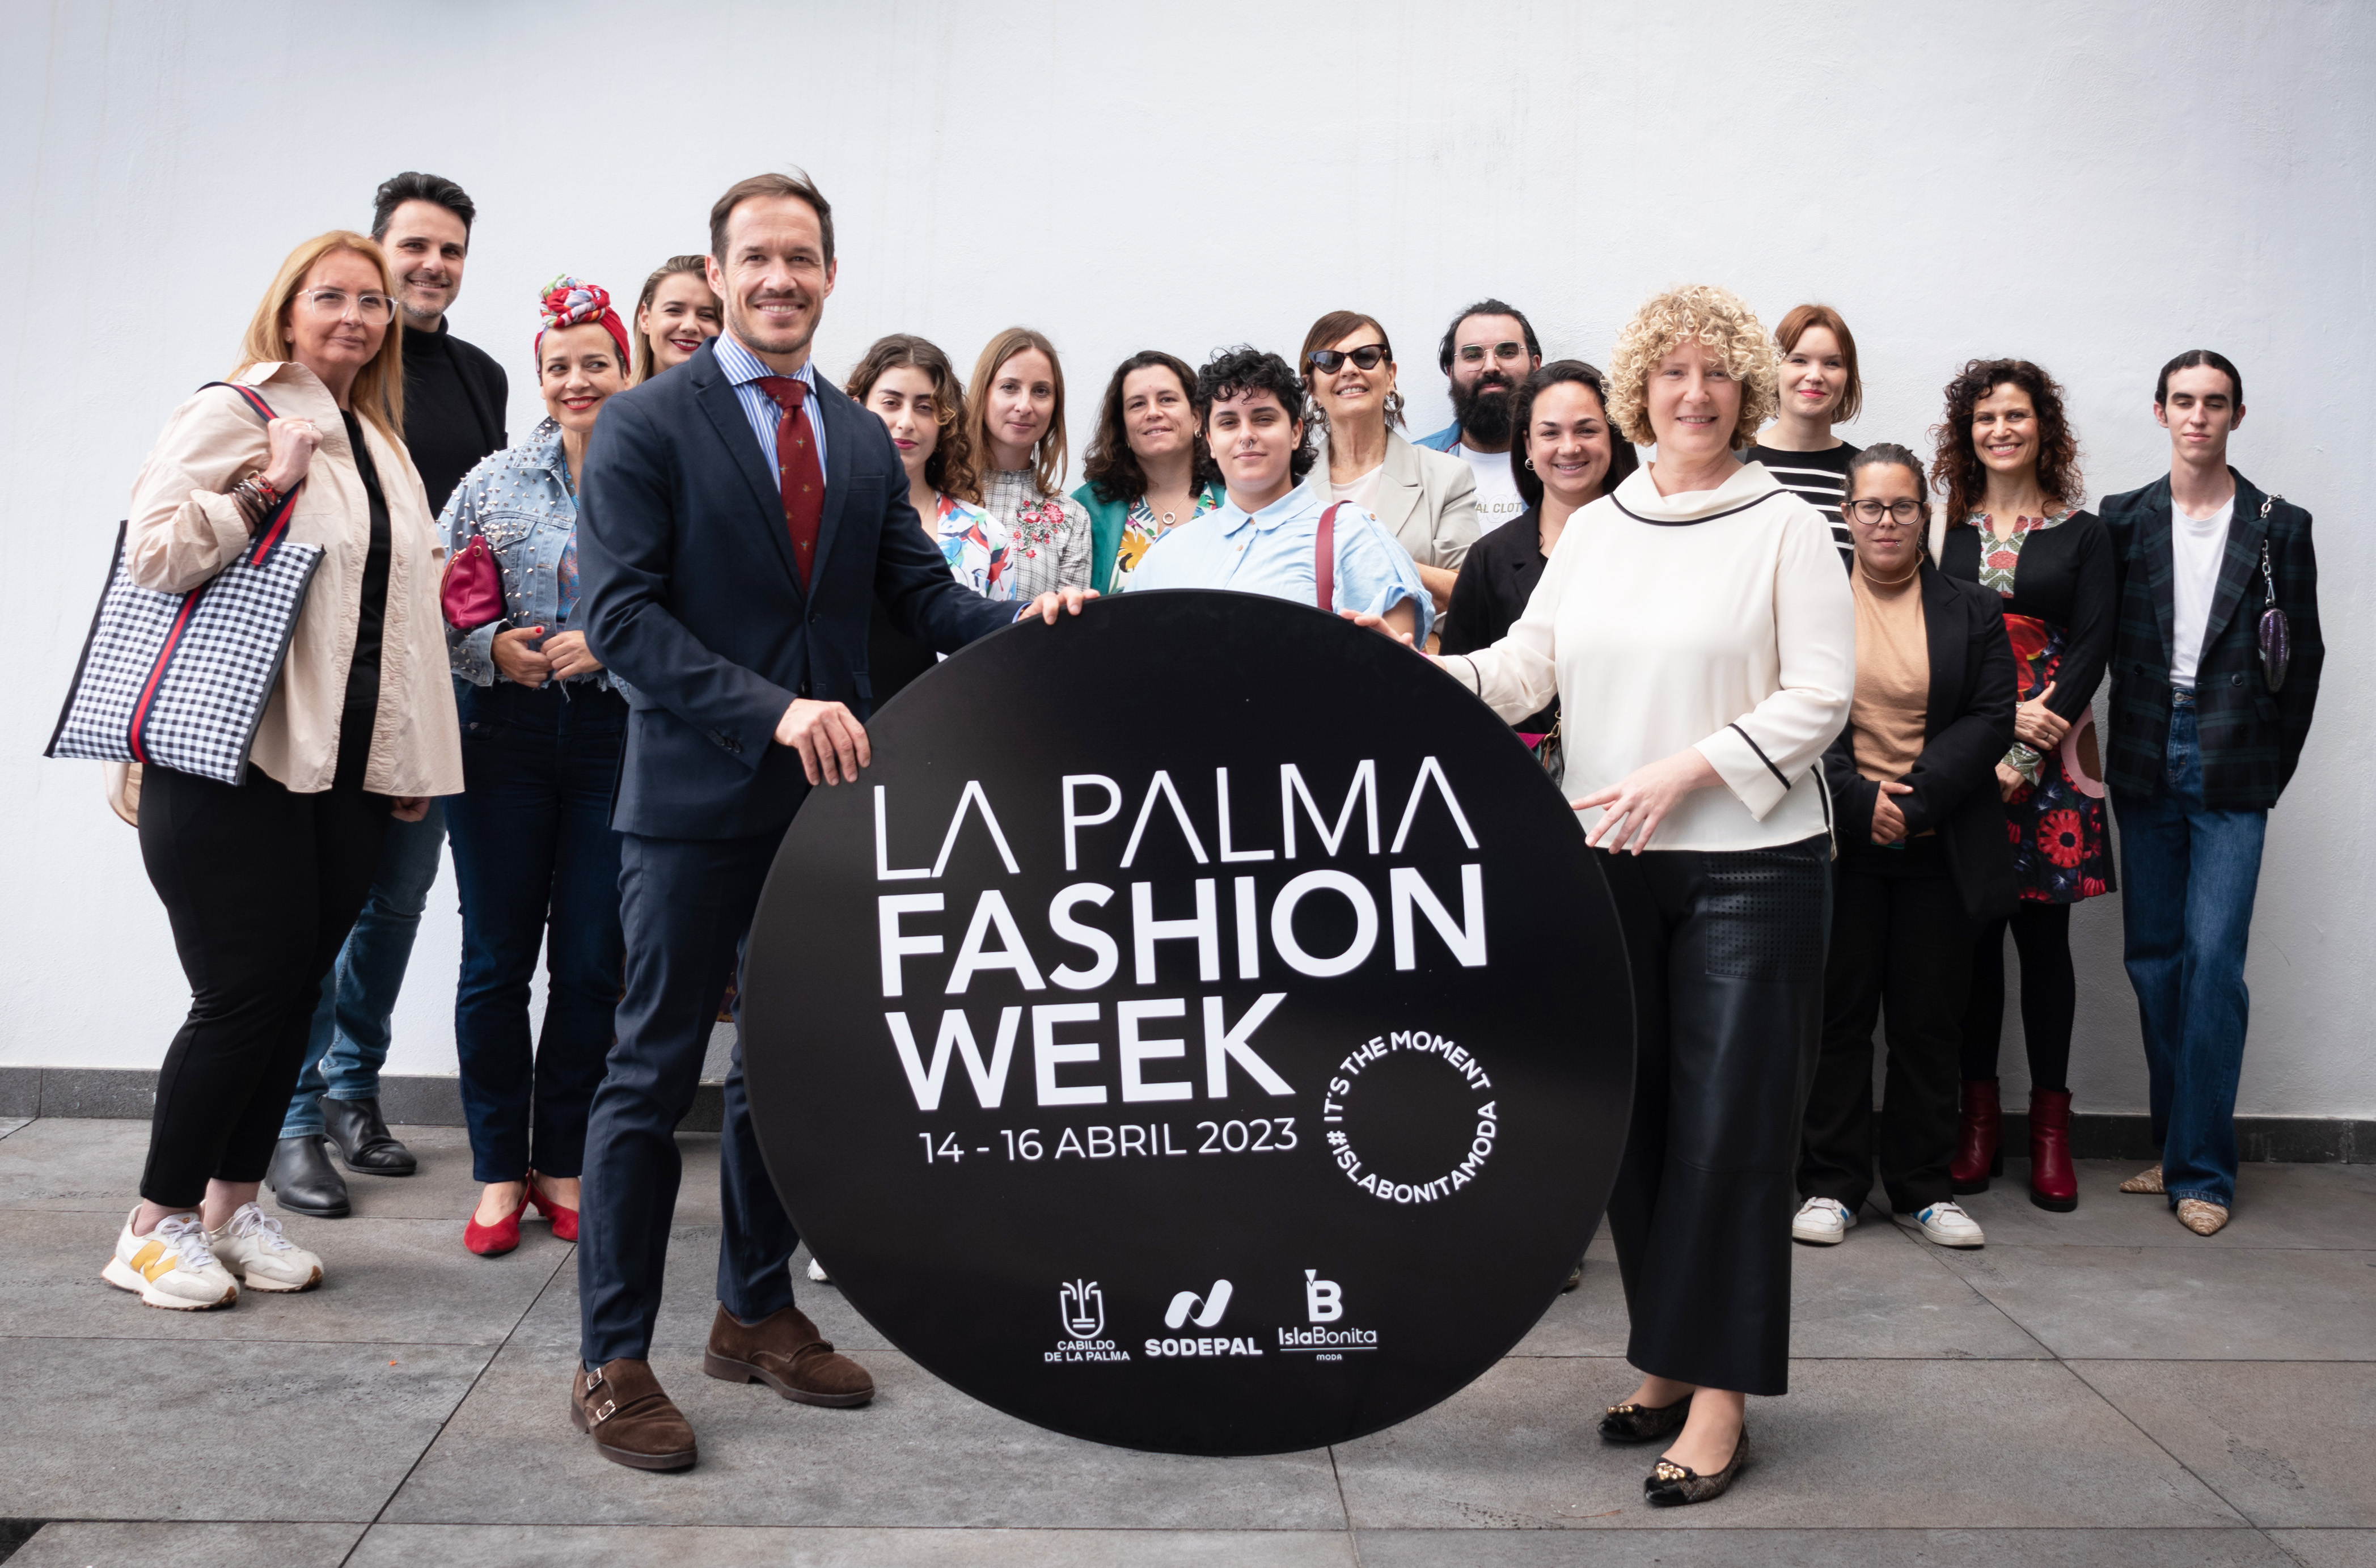 La Palma Fashion Week